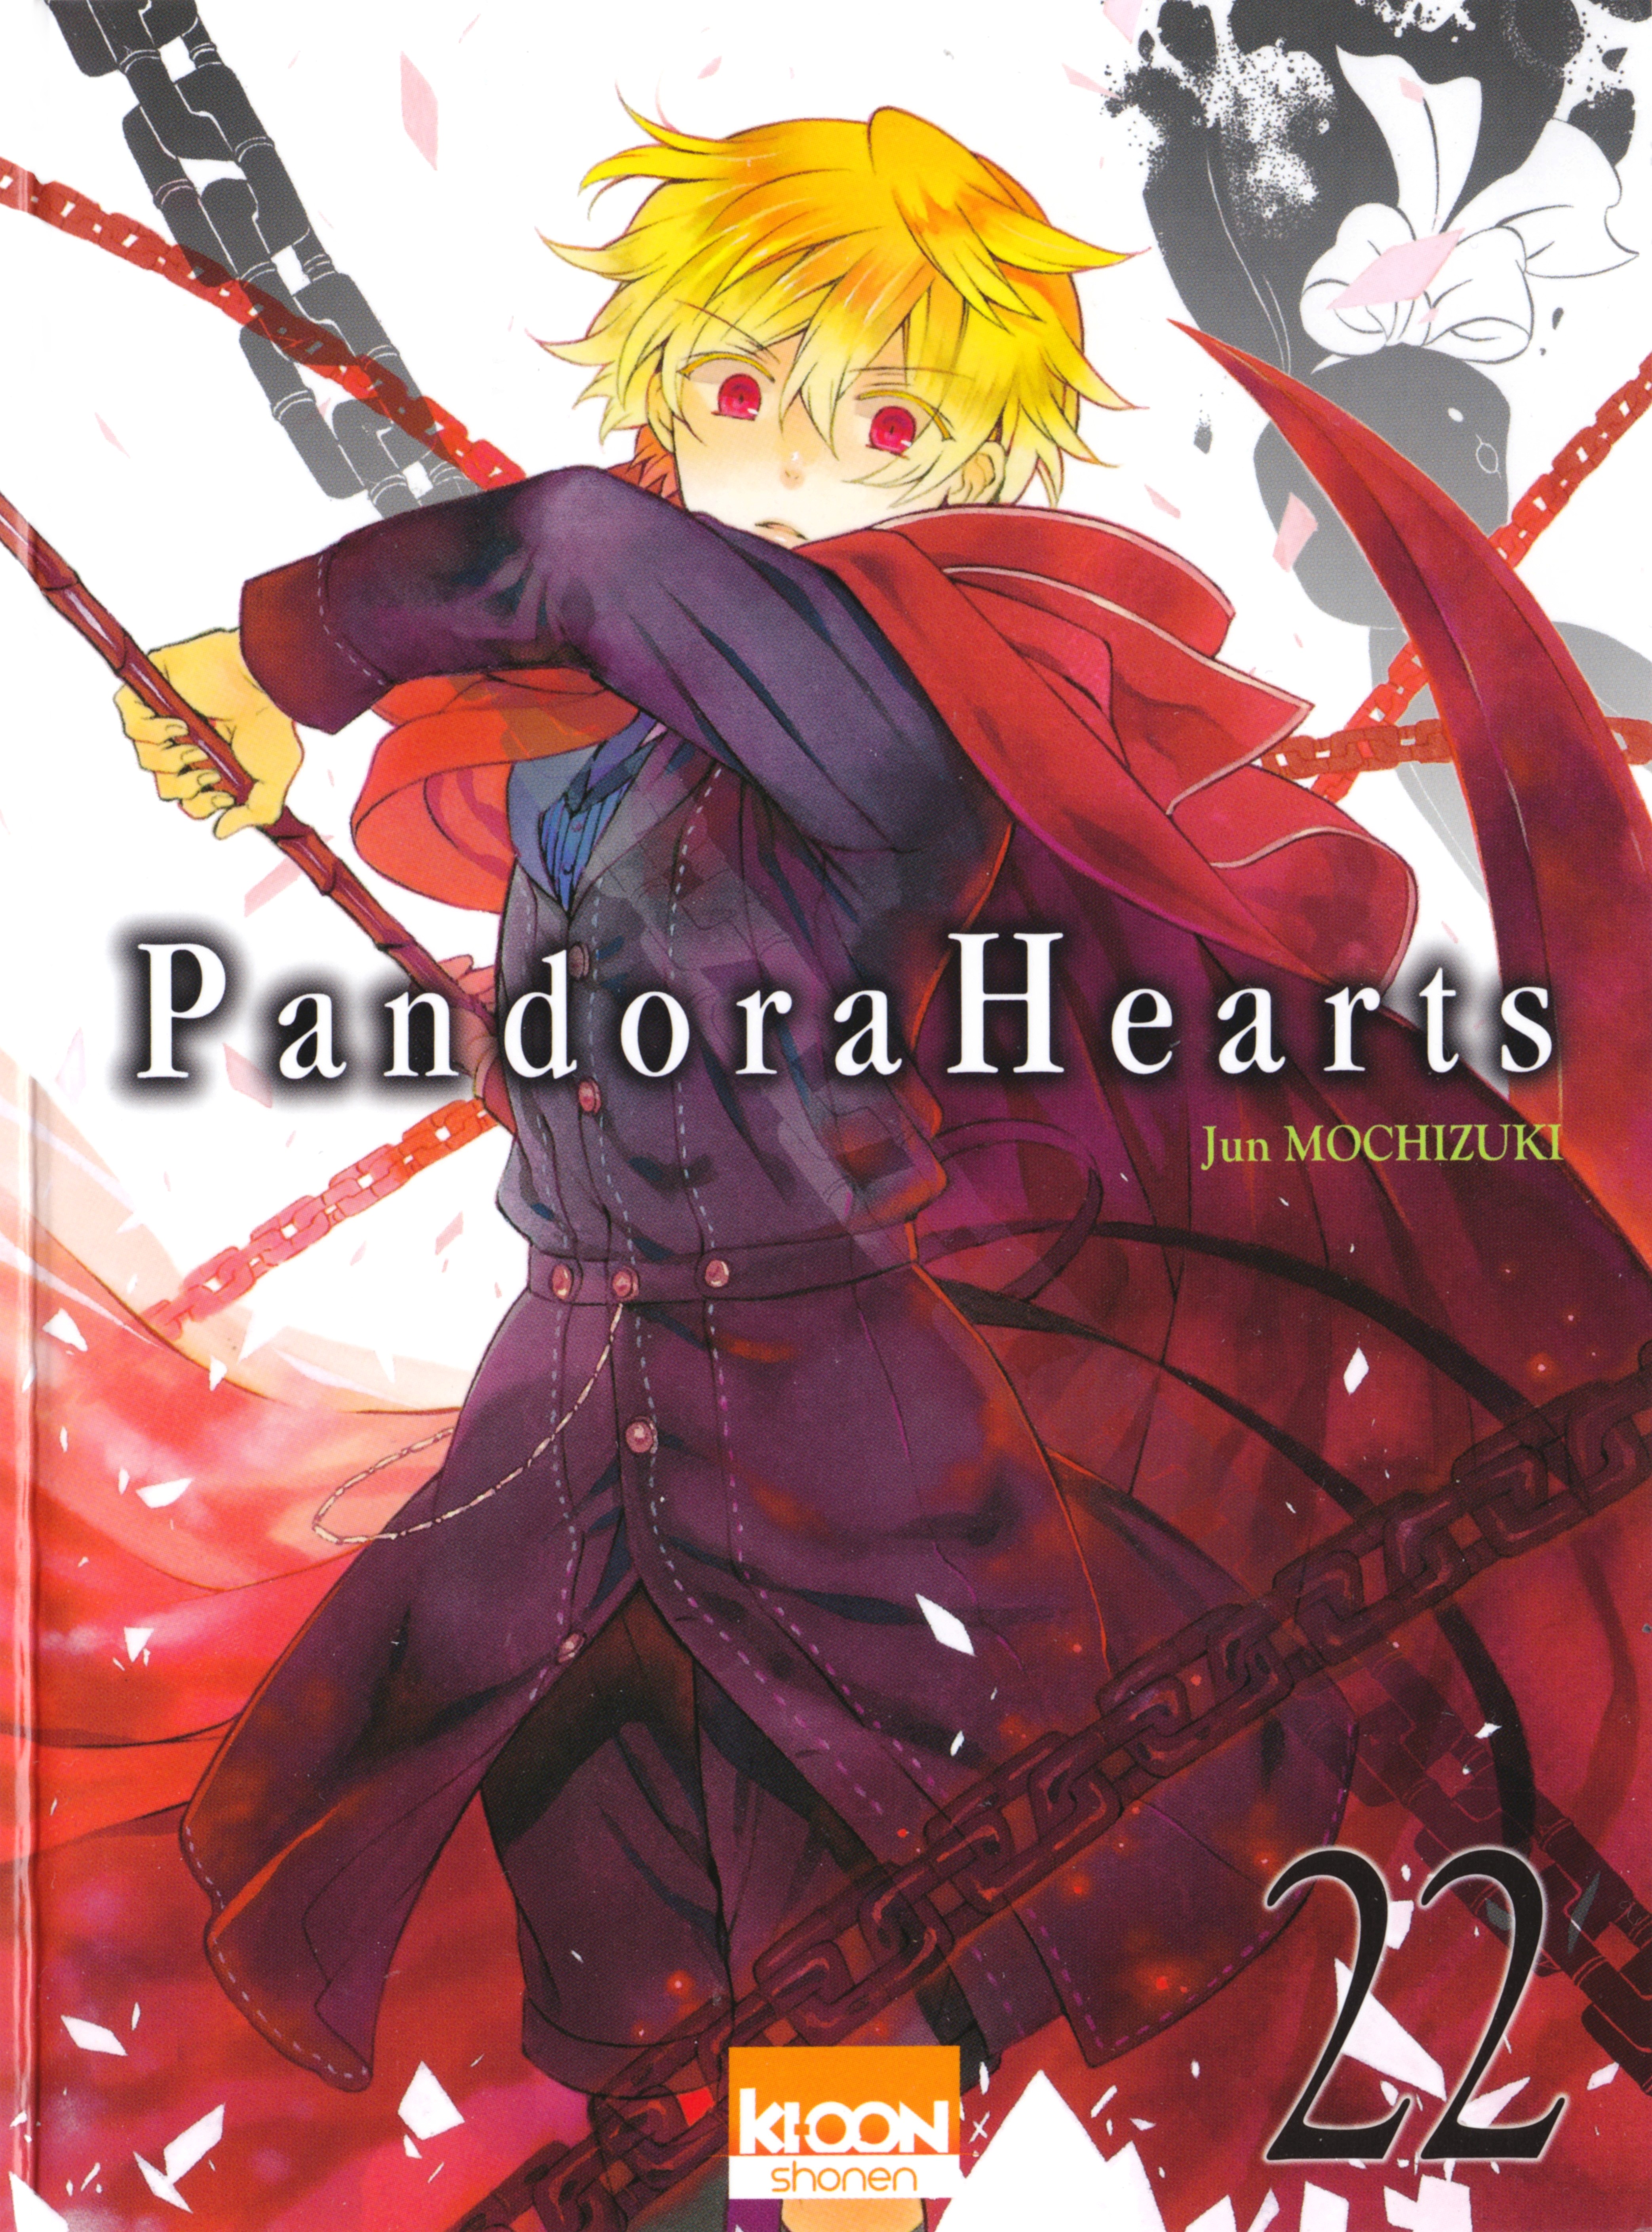 manga pandora hearts bahasa indonesia to english